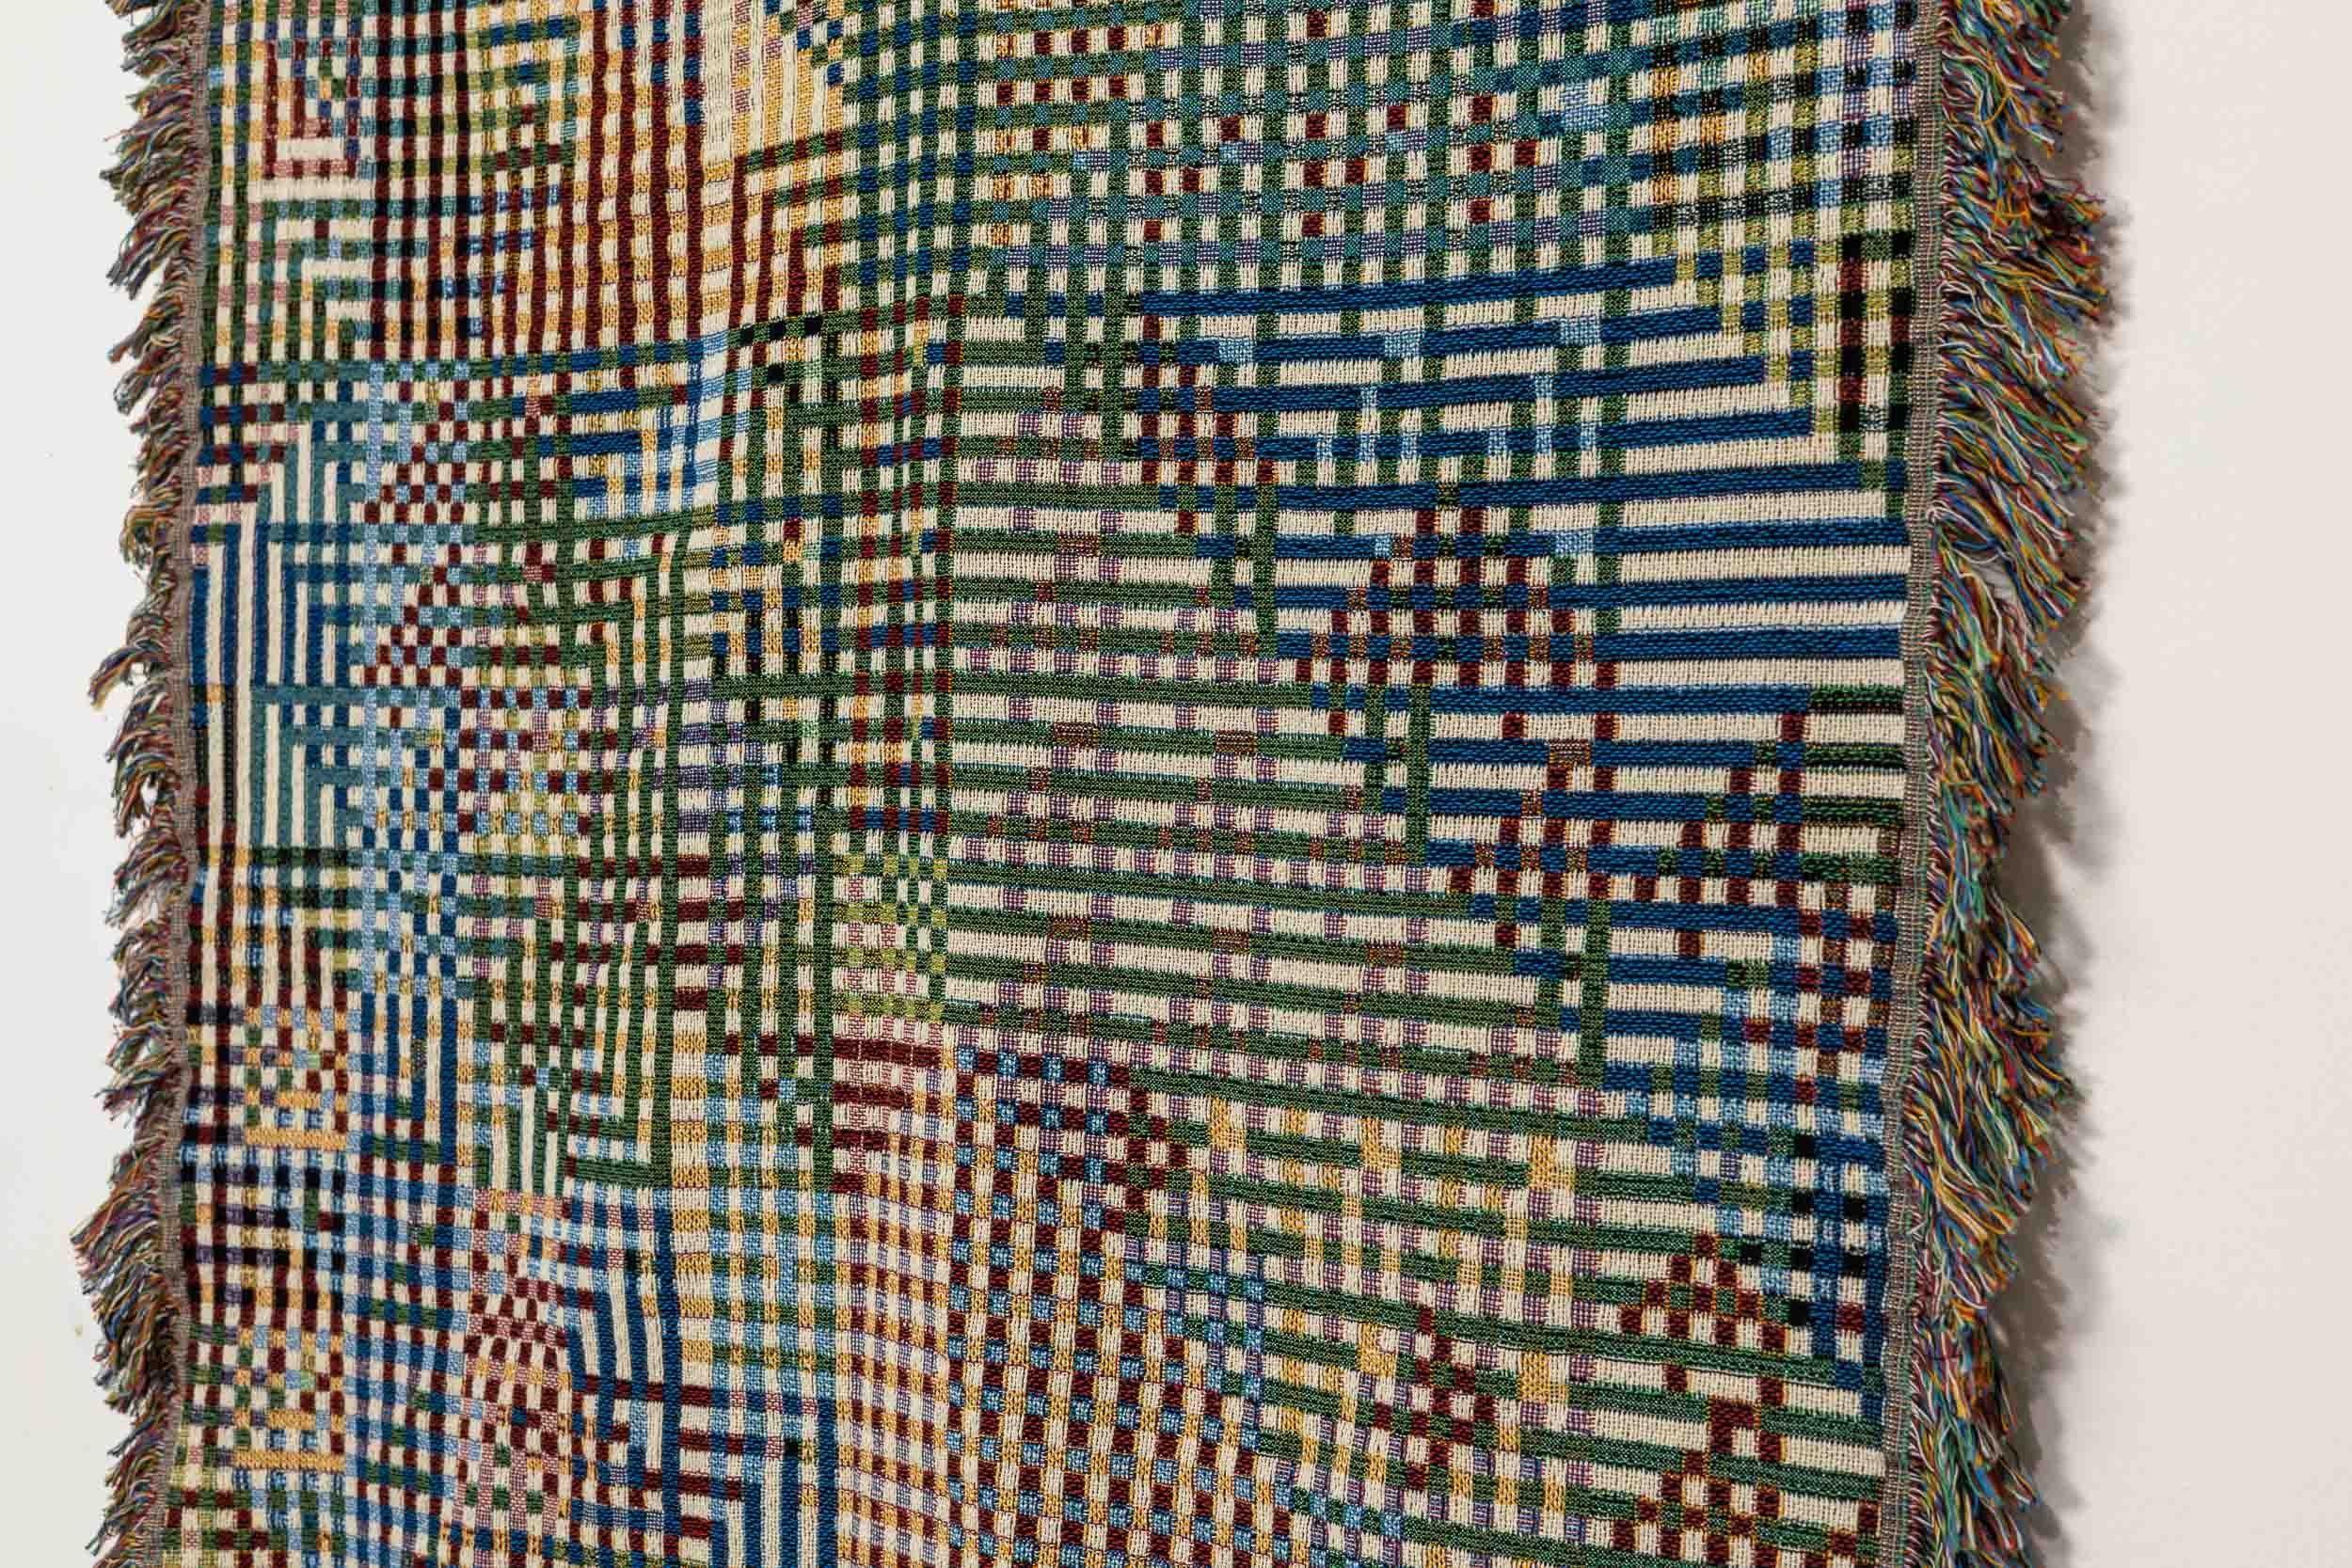 Modern Bit Map Throw Blanket 03, 100% Cotton Woven Contemporary Pixel Art, 60